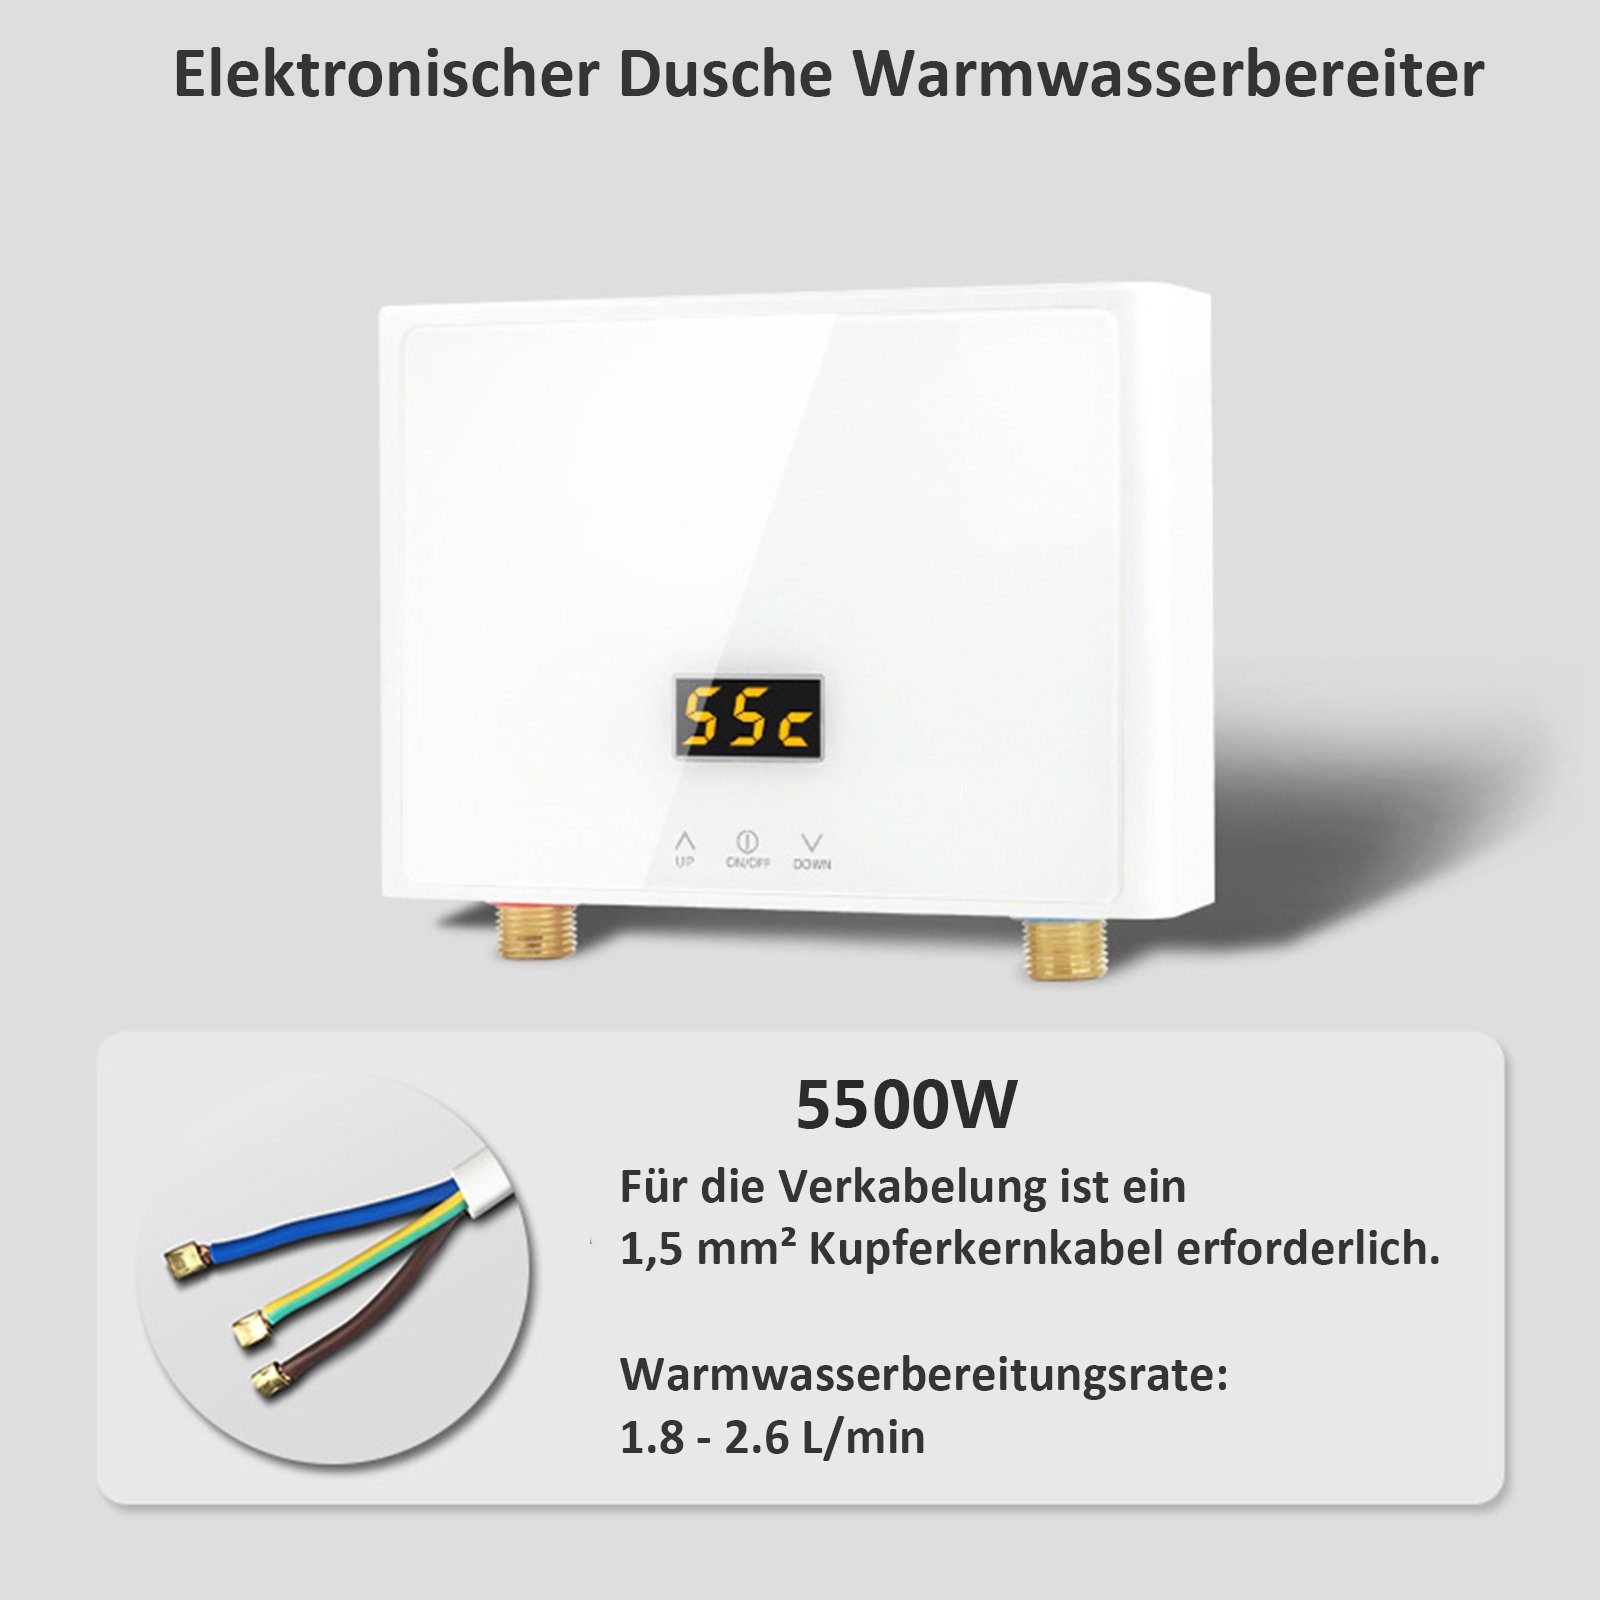 Durchlauferhitzer TWSOUL Tankless Durchlauferhitzer LED Temperaturauswahl Digitalanzeige Panel, Weiß 28-55 Strom ℃, spart mit Mini